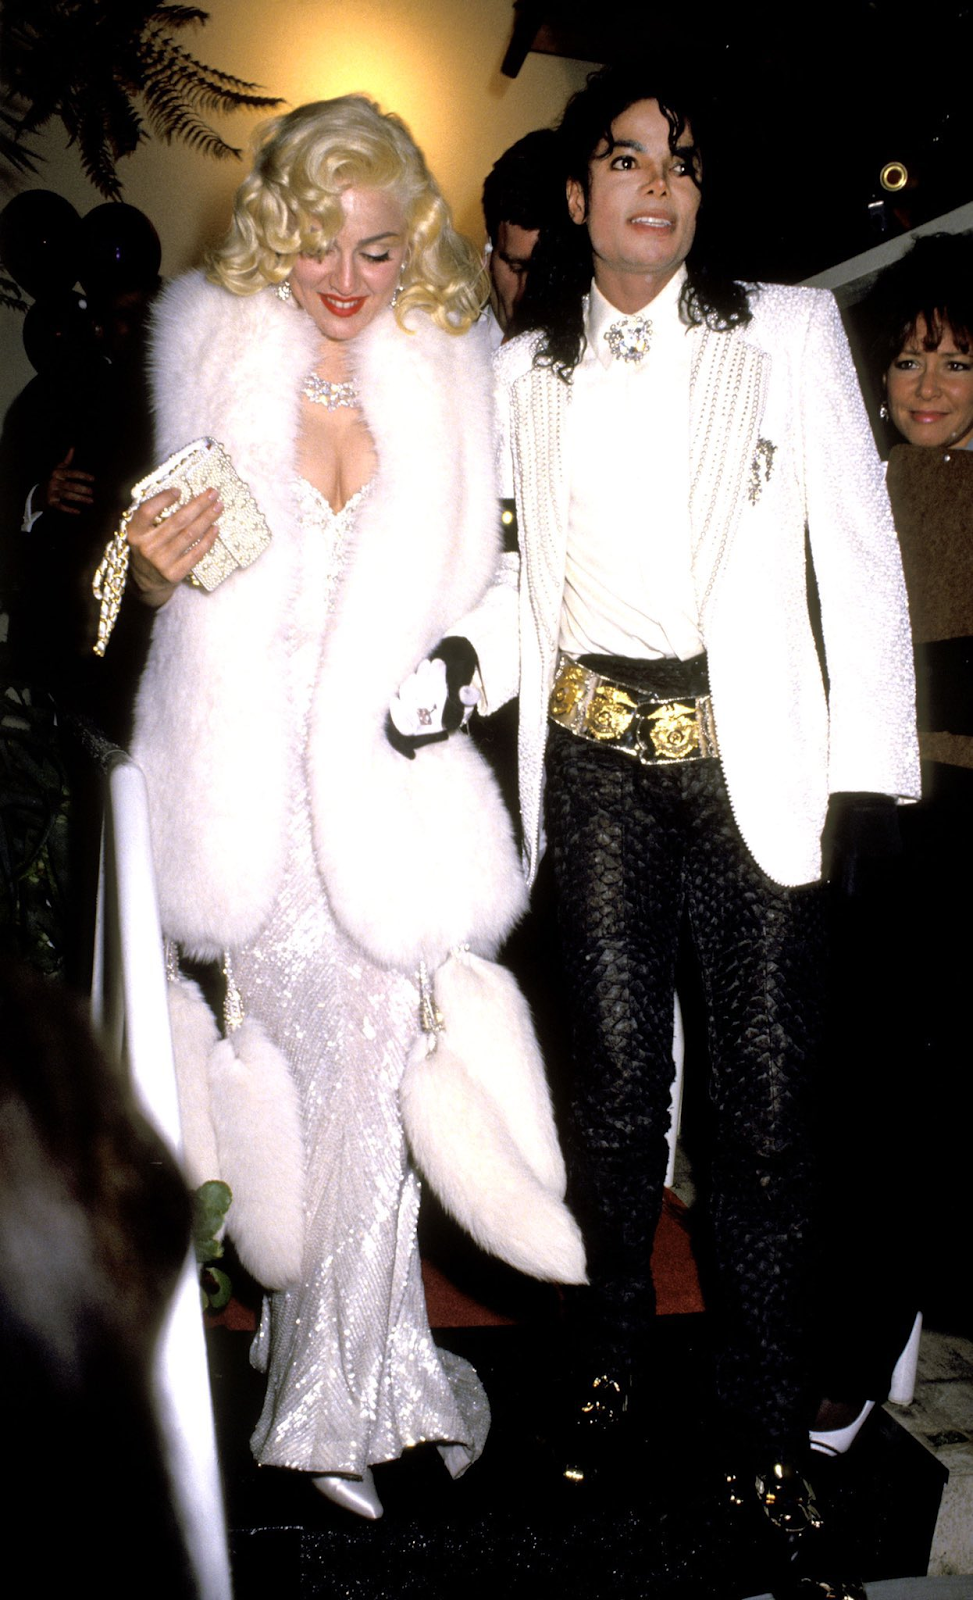 Imagem de conteúdo da notícia "Dueto virtual: relembre a relação da Rainha e do Rei do Pop" #1